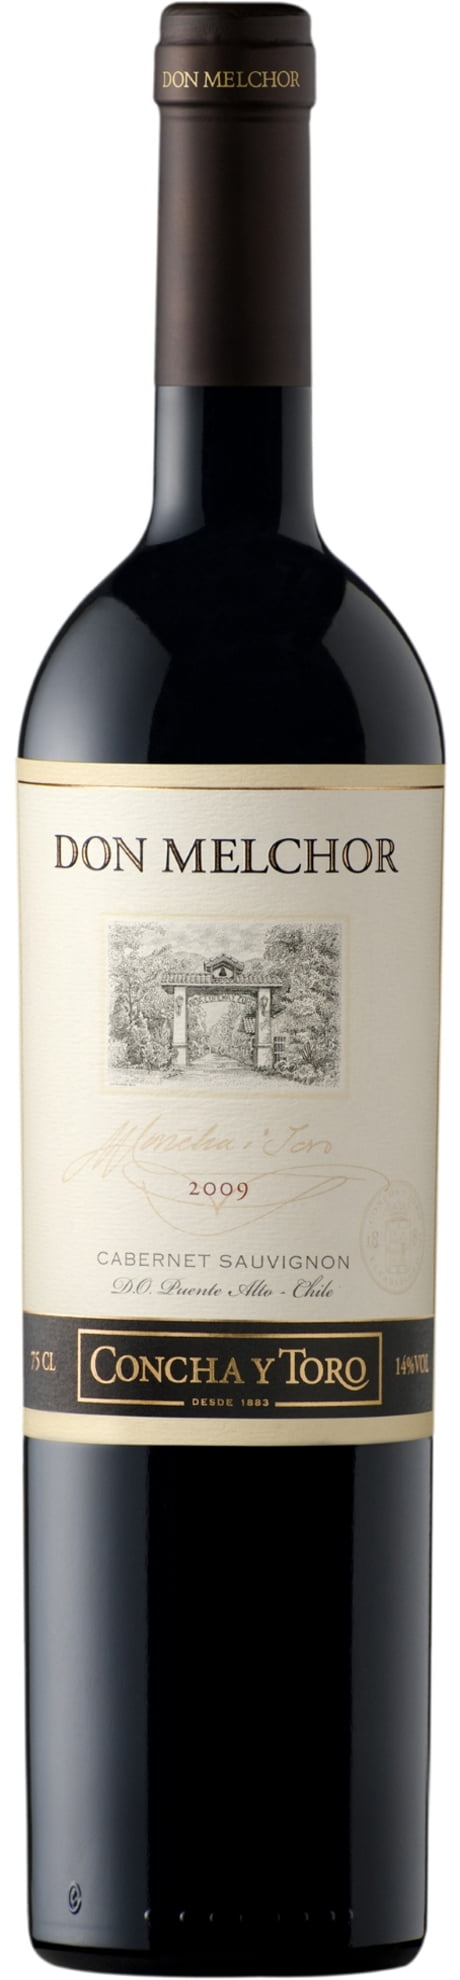 Don Melchor 2009